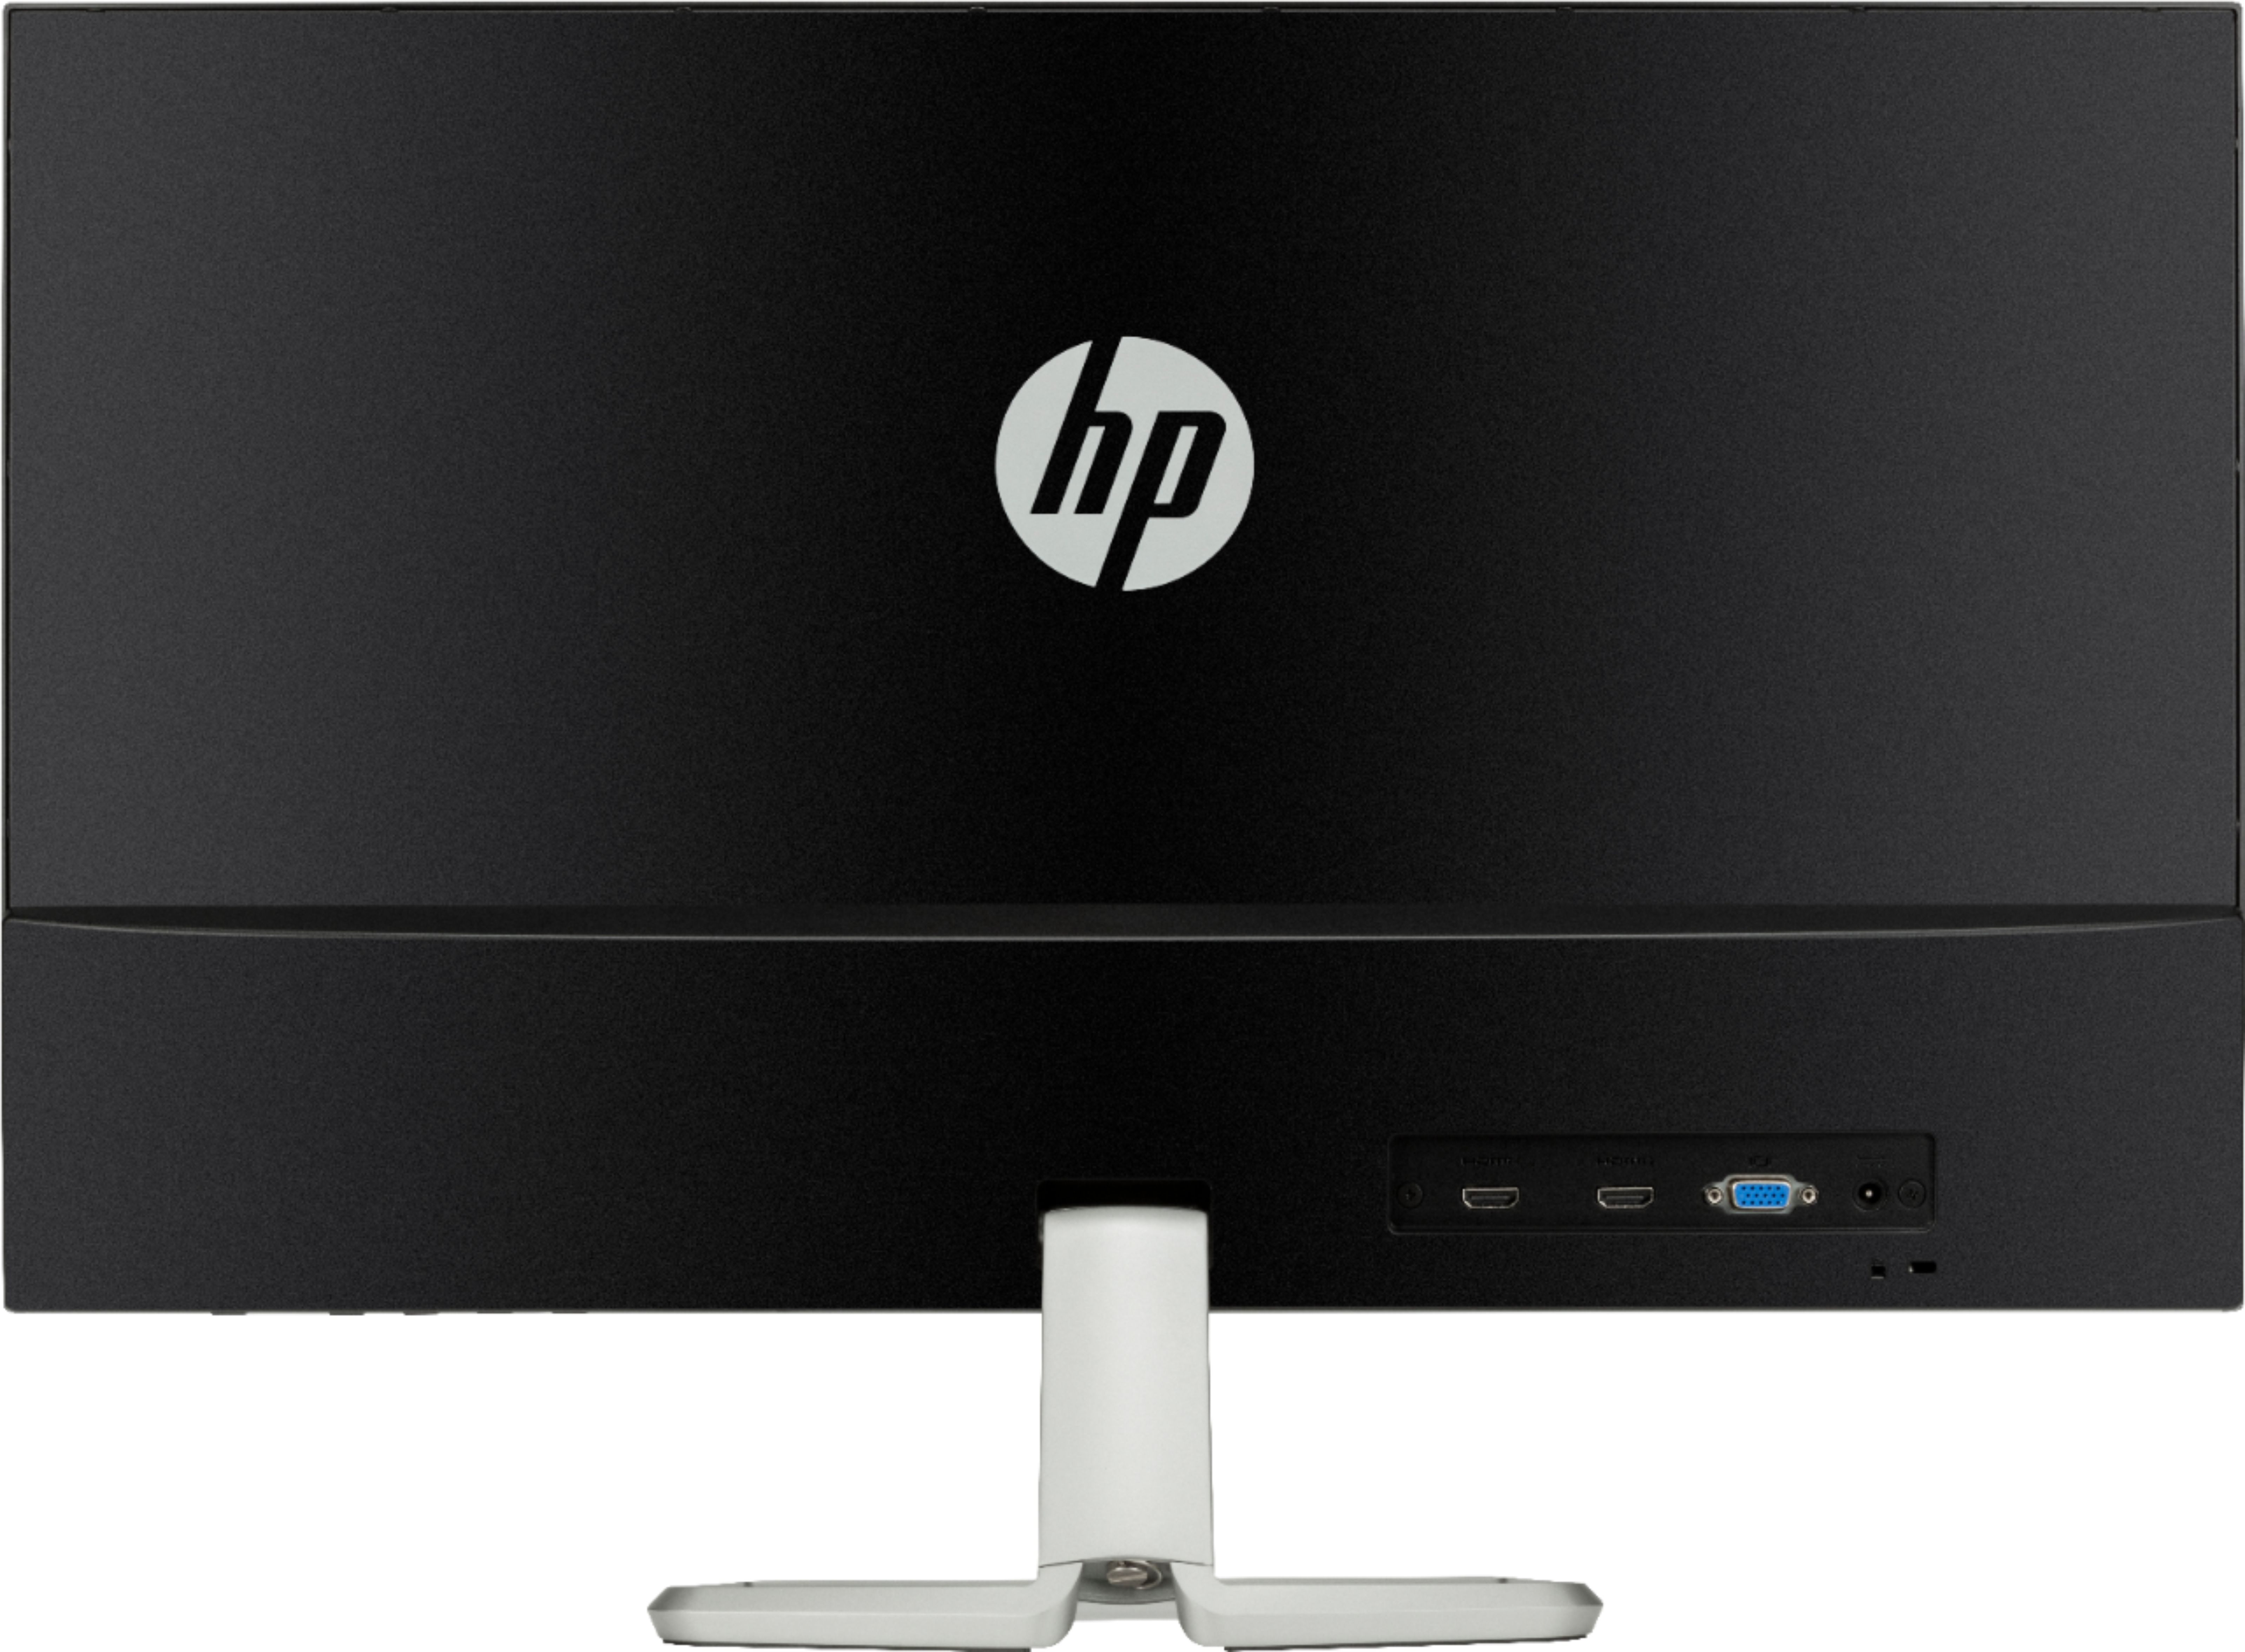 Back View: HP - 27" IPS LED FHD FreeSync Monitor (HDMI, VGA) - Natural Silver